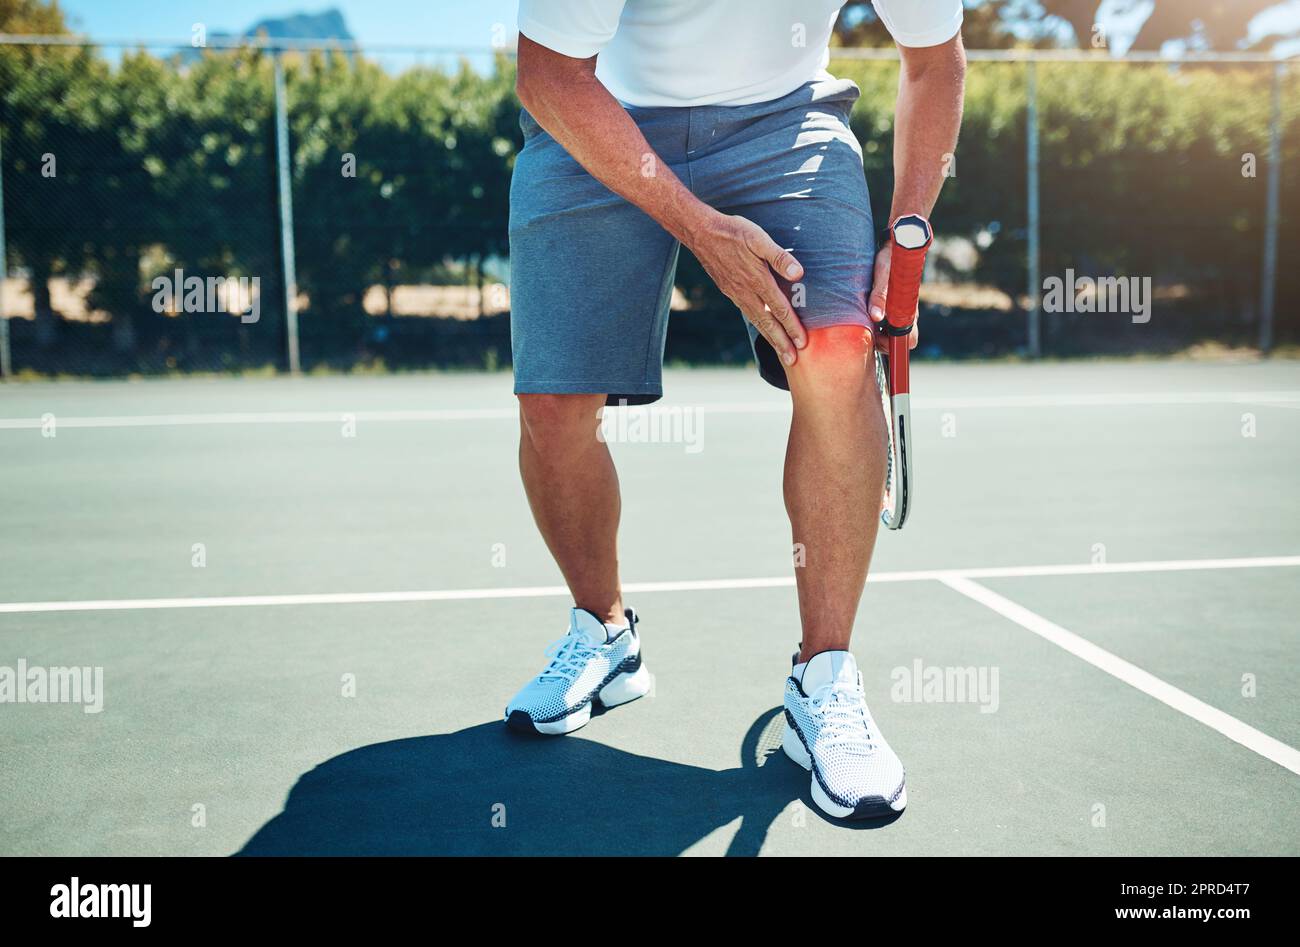 OW My Knee. Ein nicht erkennbarer Sportler, der an einer Knieverletzung leidet, während er alleine Tennis spielt. Stockfoto